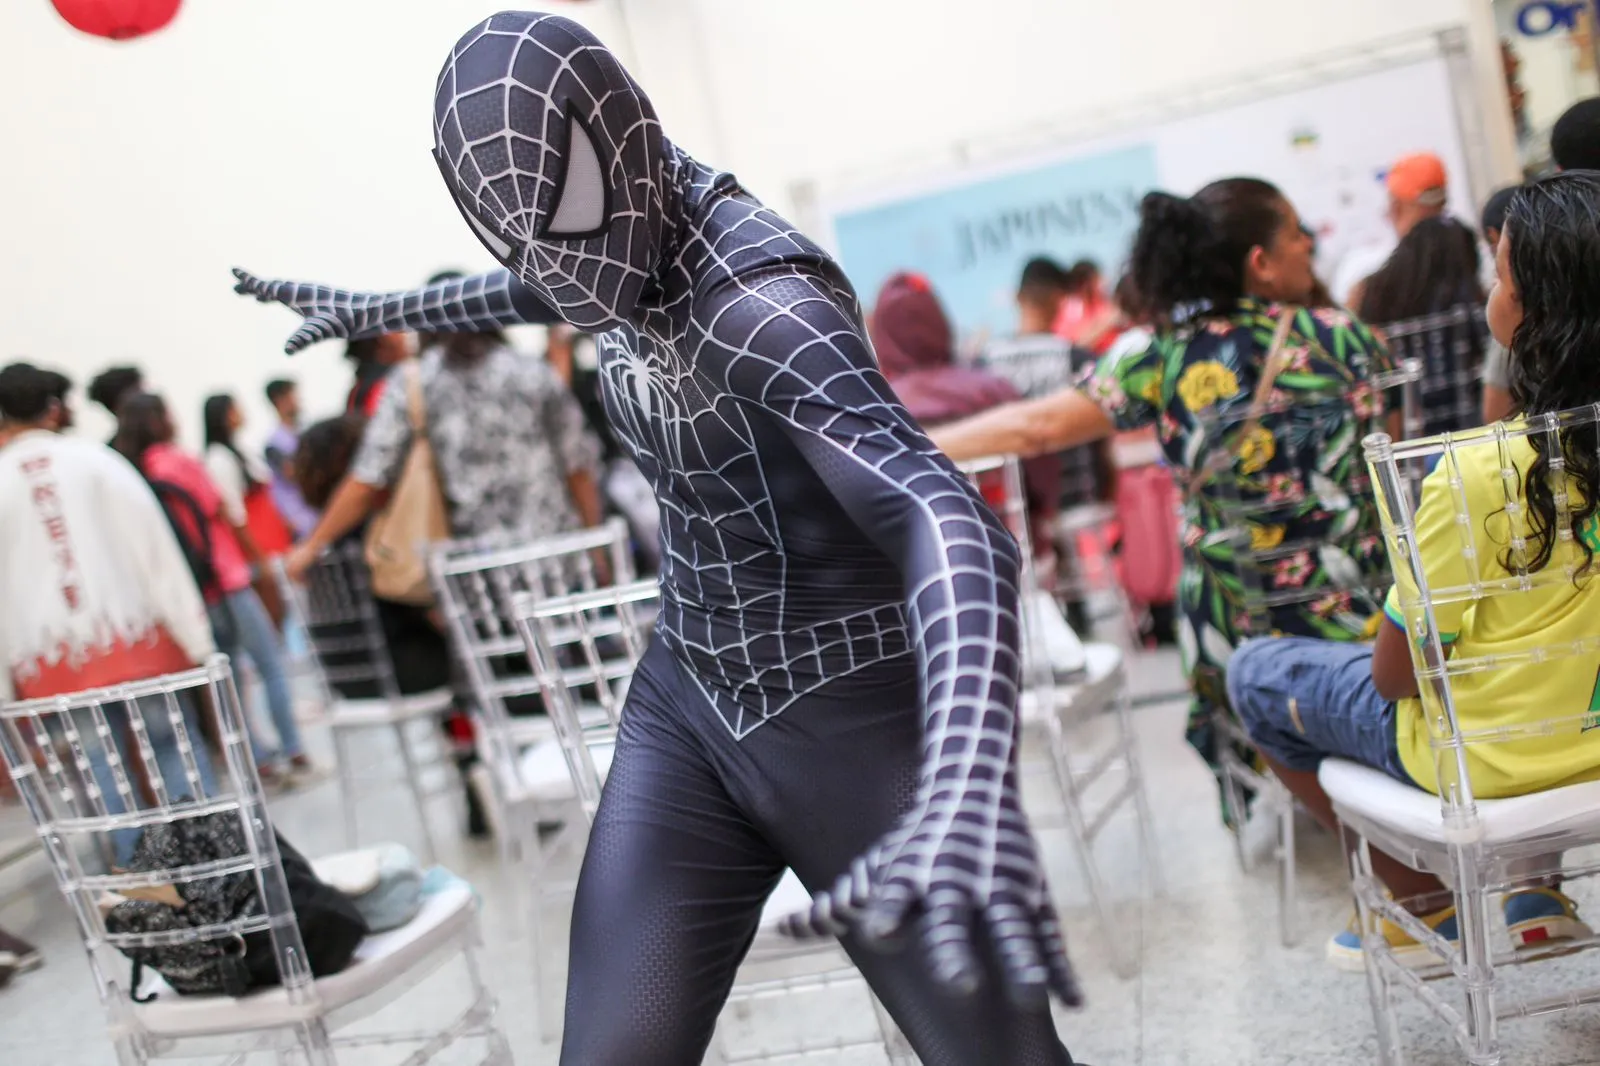 Carlos Humberto levou o Homem-Aranha para o festival japonês